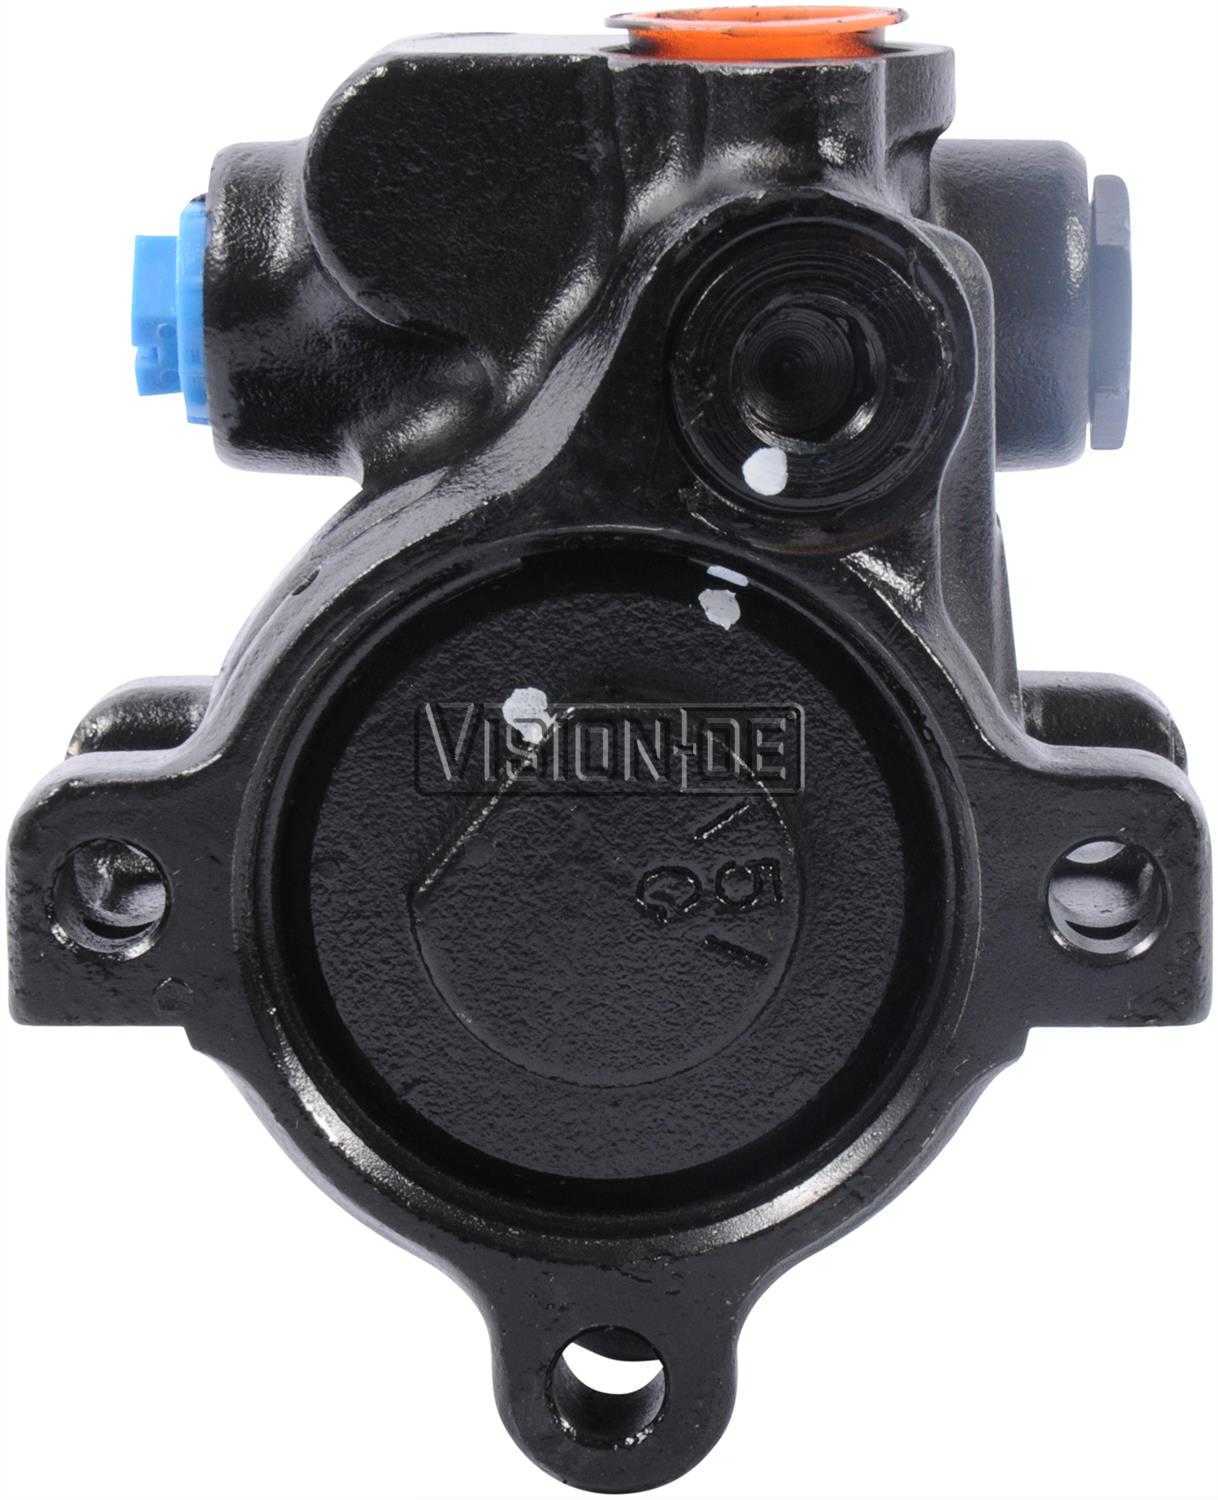 VISION-OE - Reman Power Steering Pump - VOE 712-0185